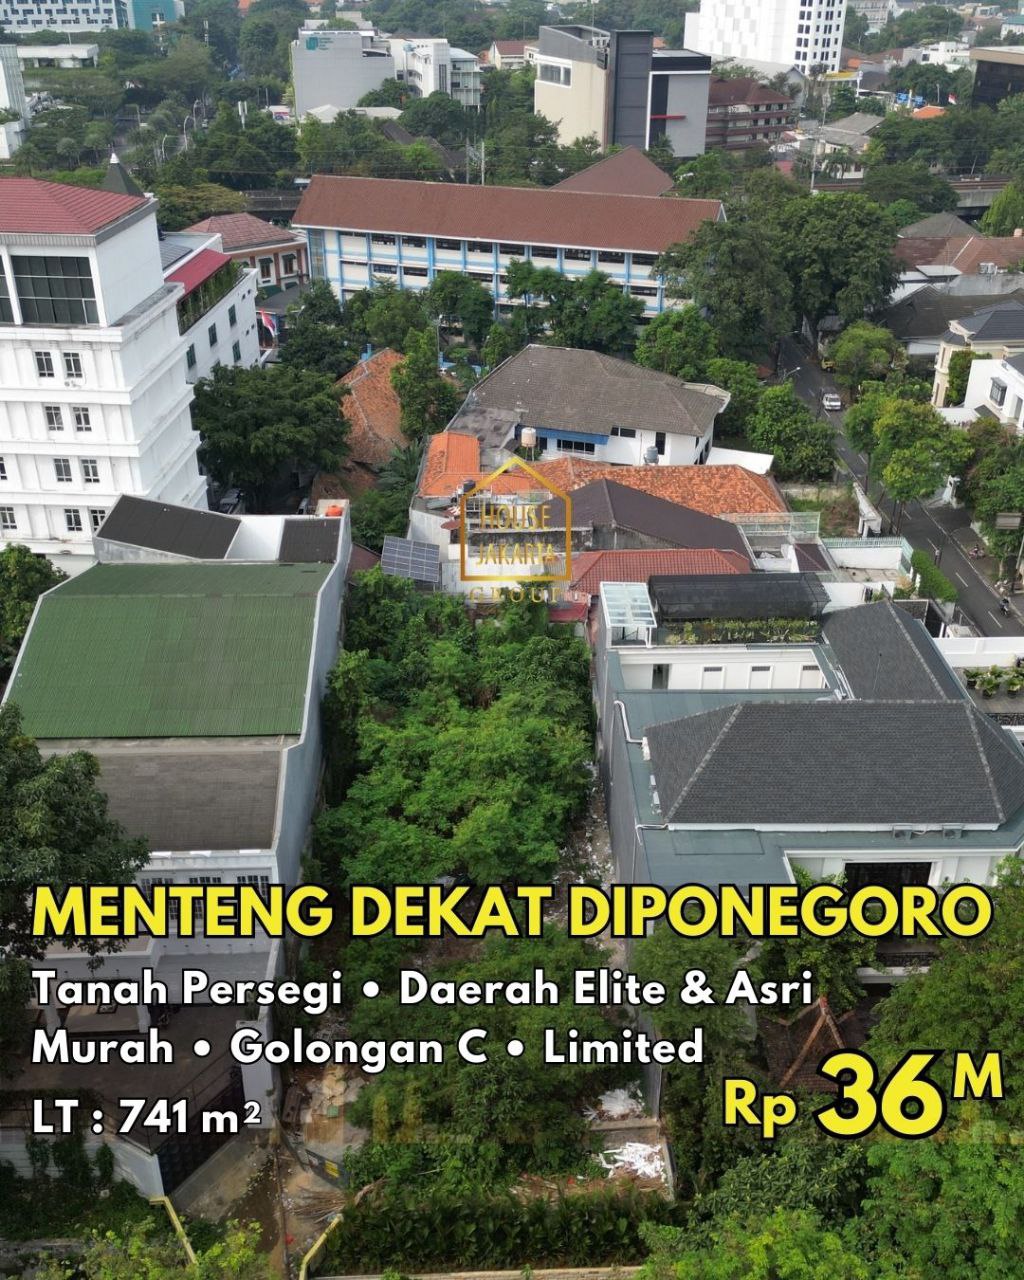  Tanah Persegi Di Menteng Dekat Diponegoro, Daerah Elite & Asri, Golongan C, Limited, Murah